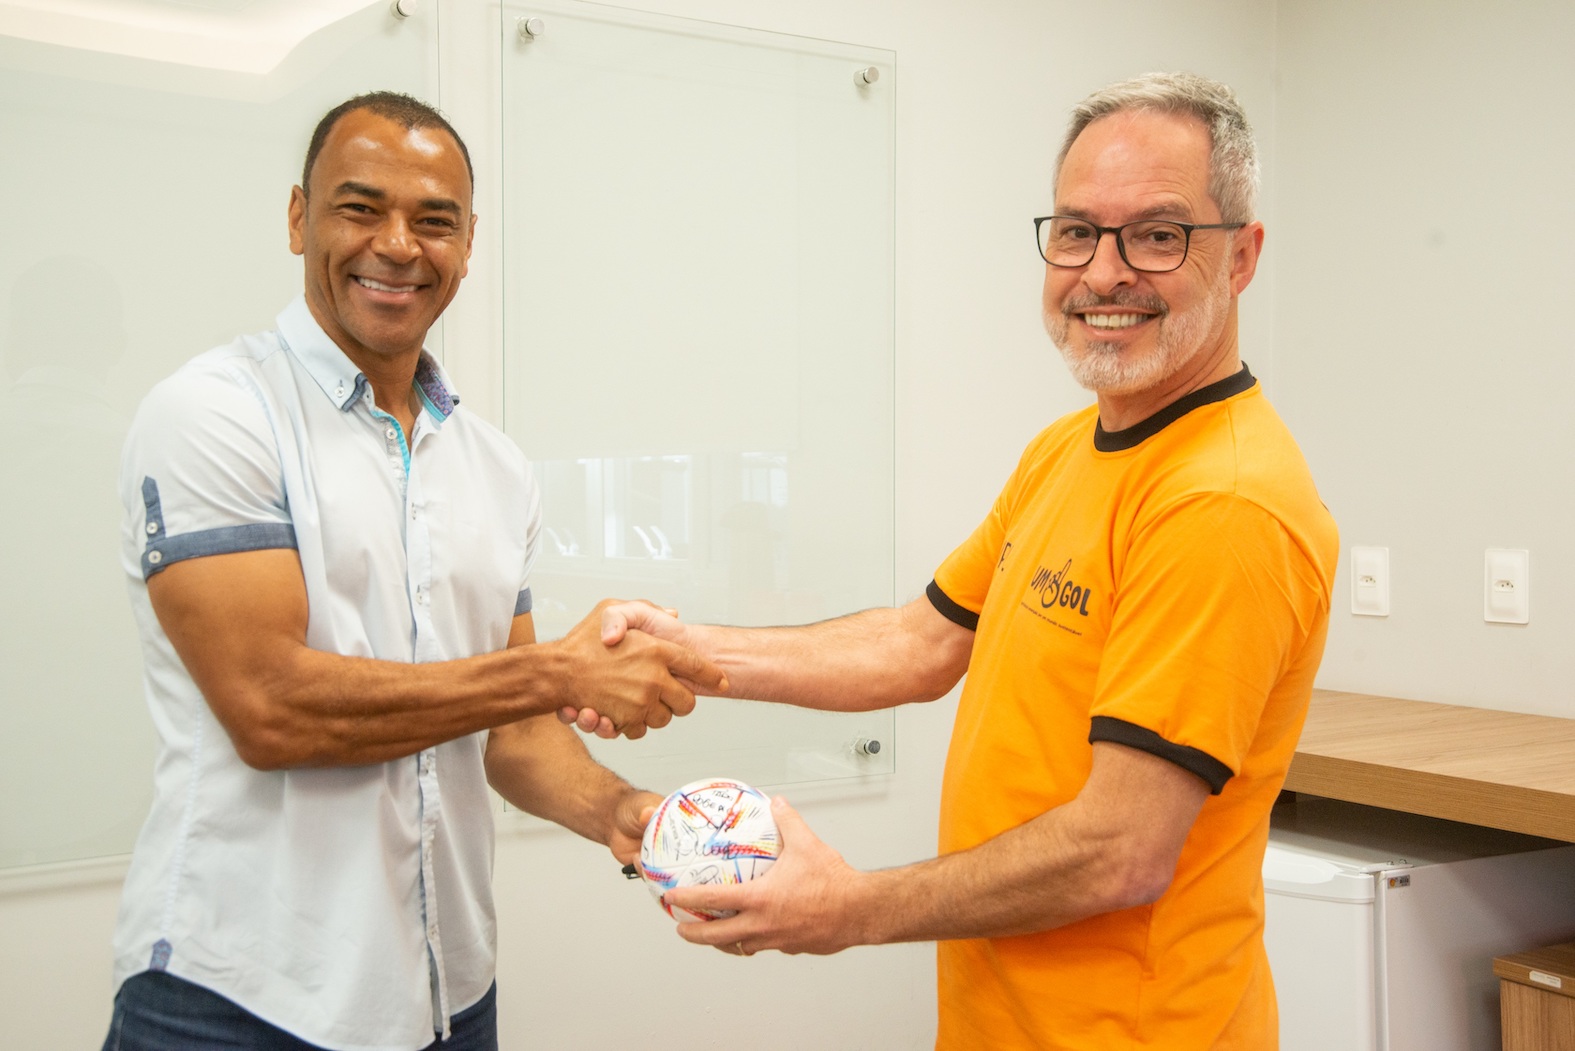 Em evento com Cafu, patrocinadora exibe taça da Copa da Mundo de